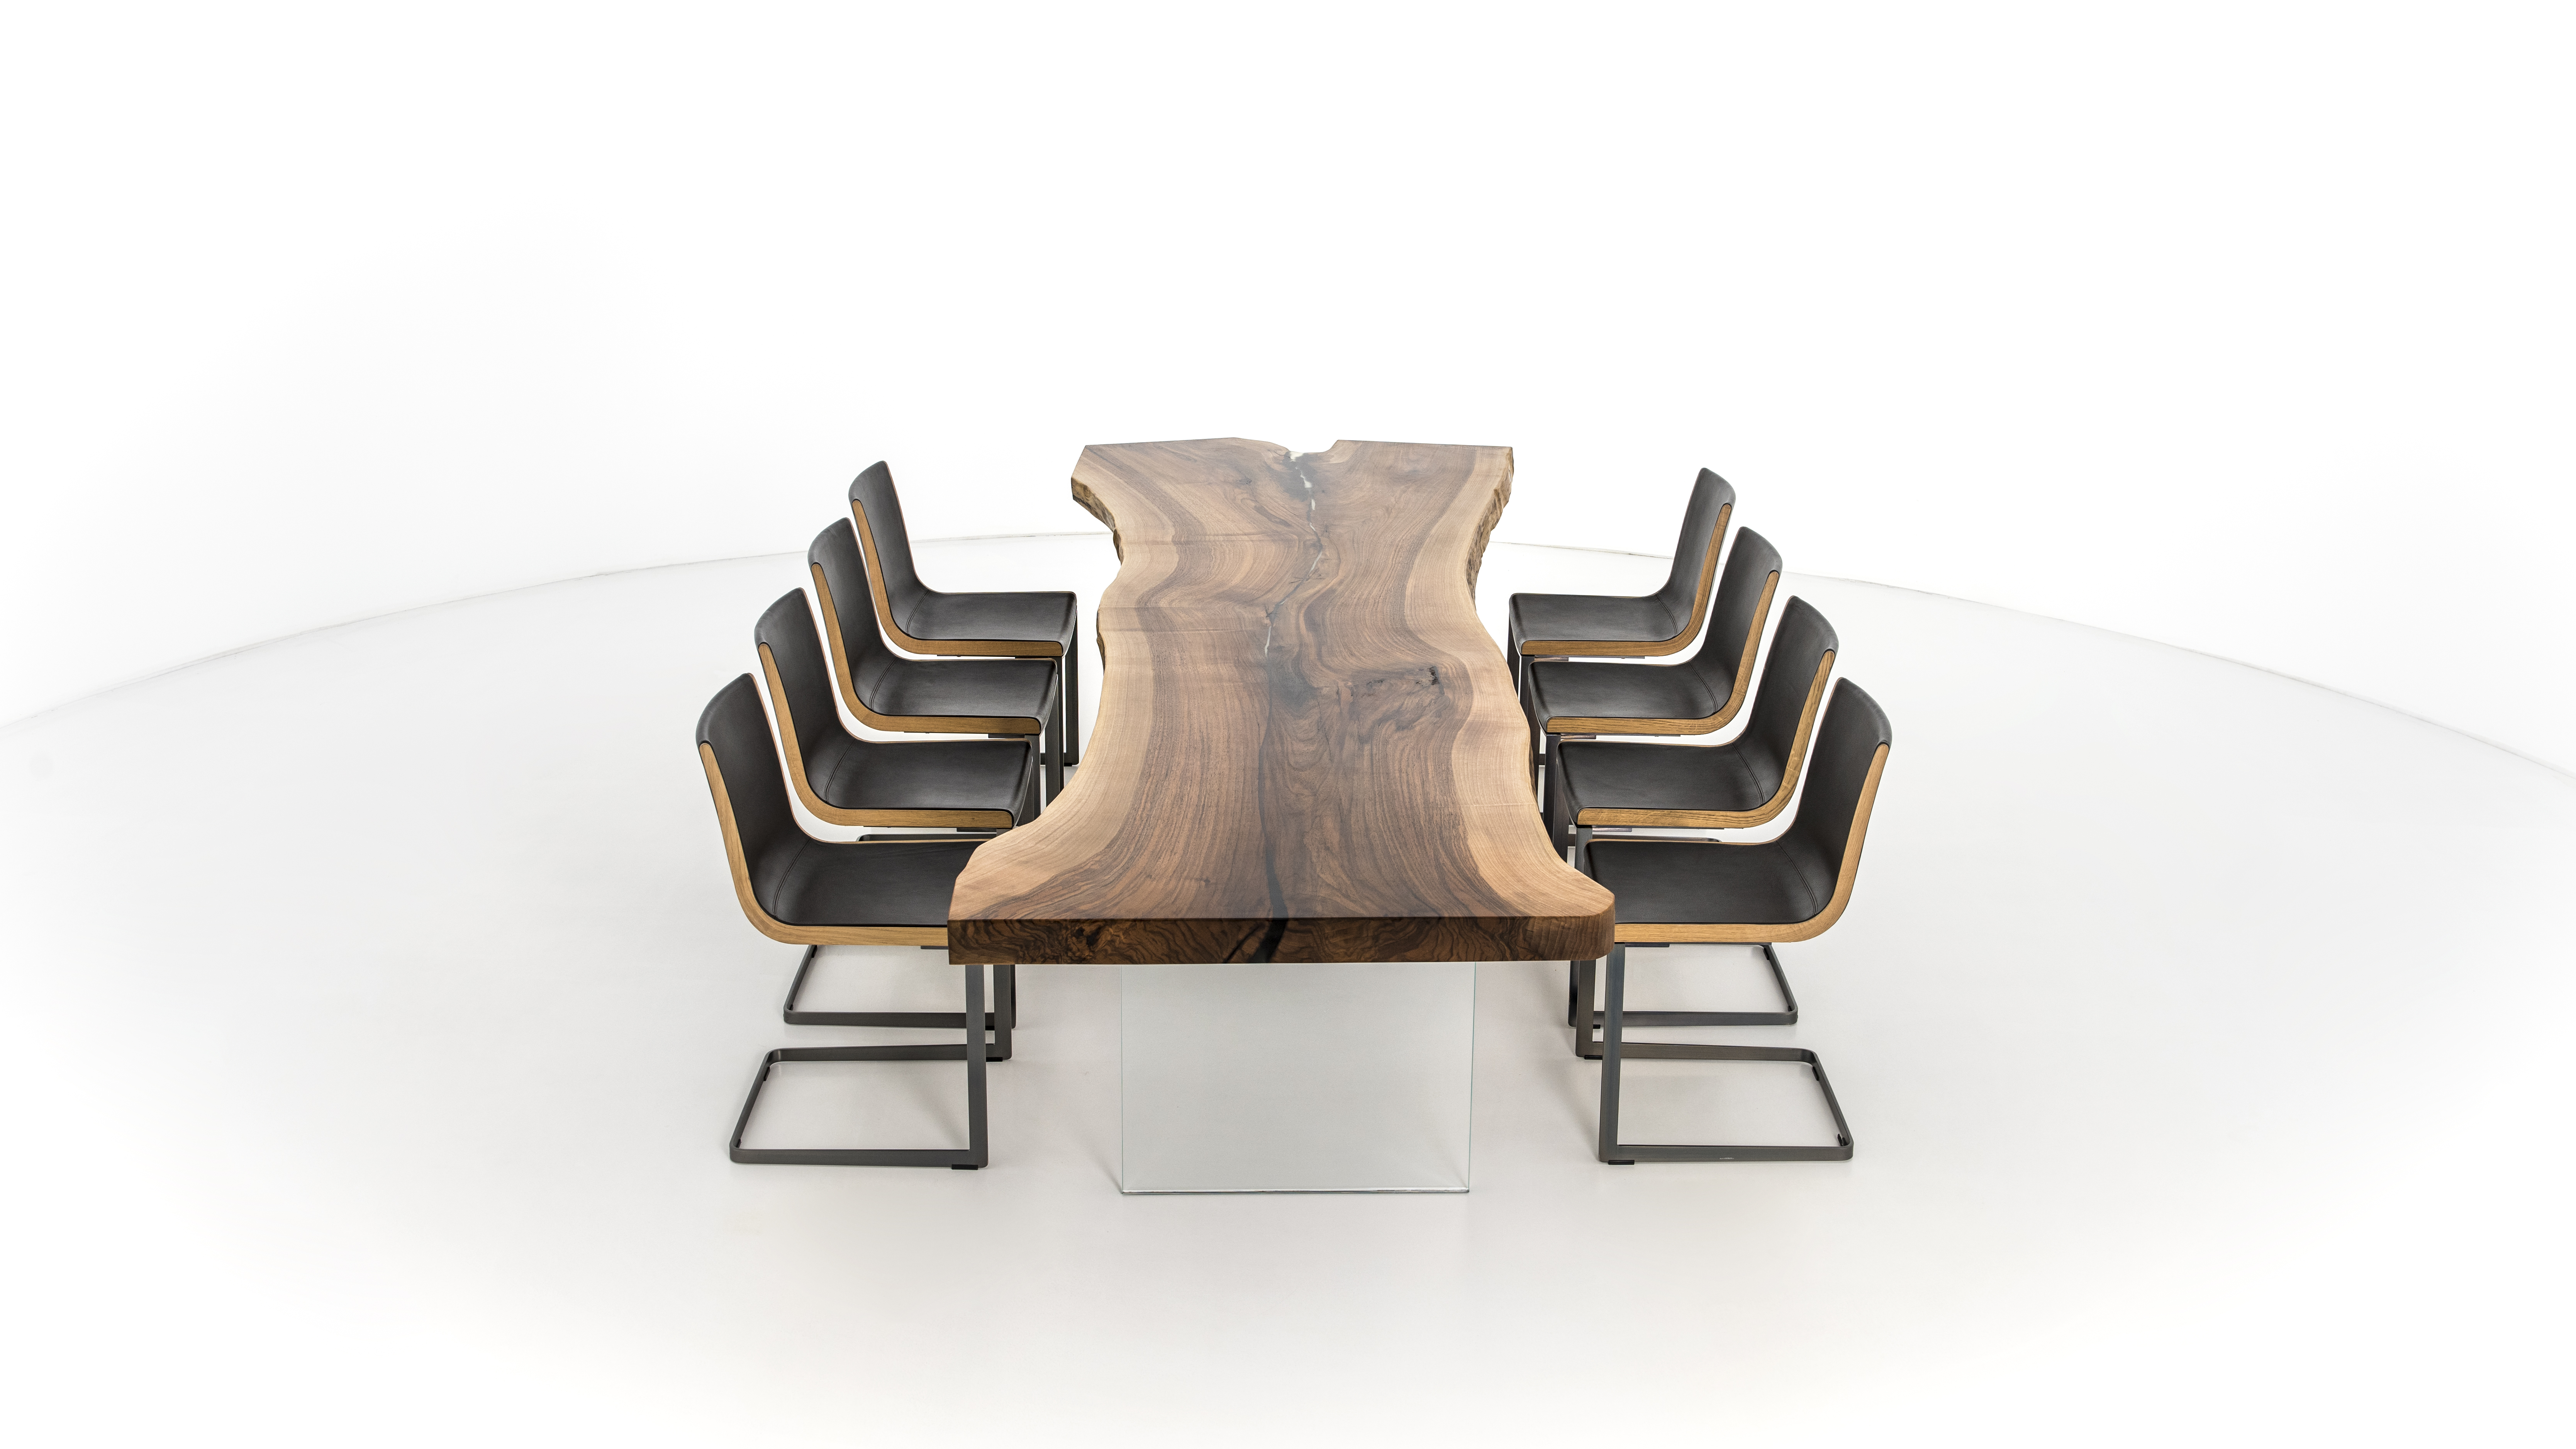 Tavolo tronco d'albero di design in legno a 360° vista prodotto